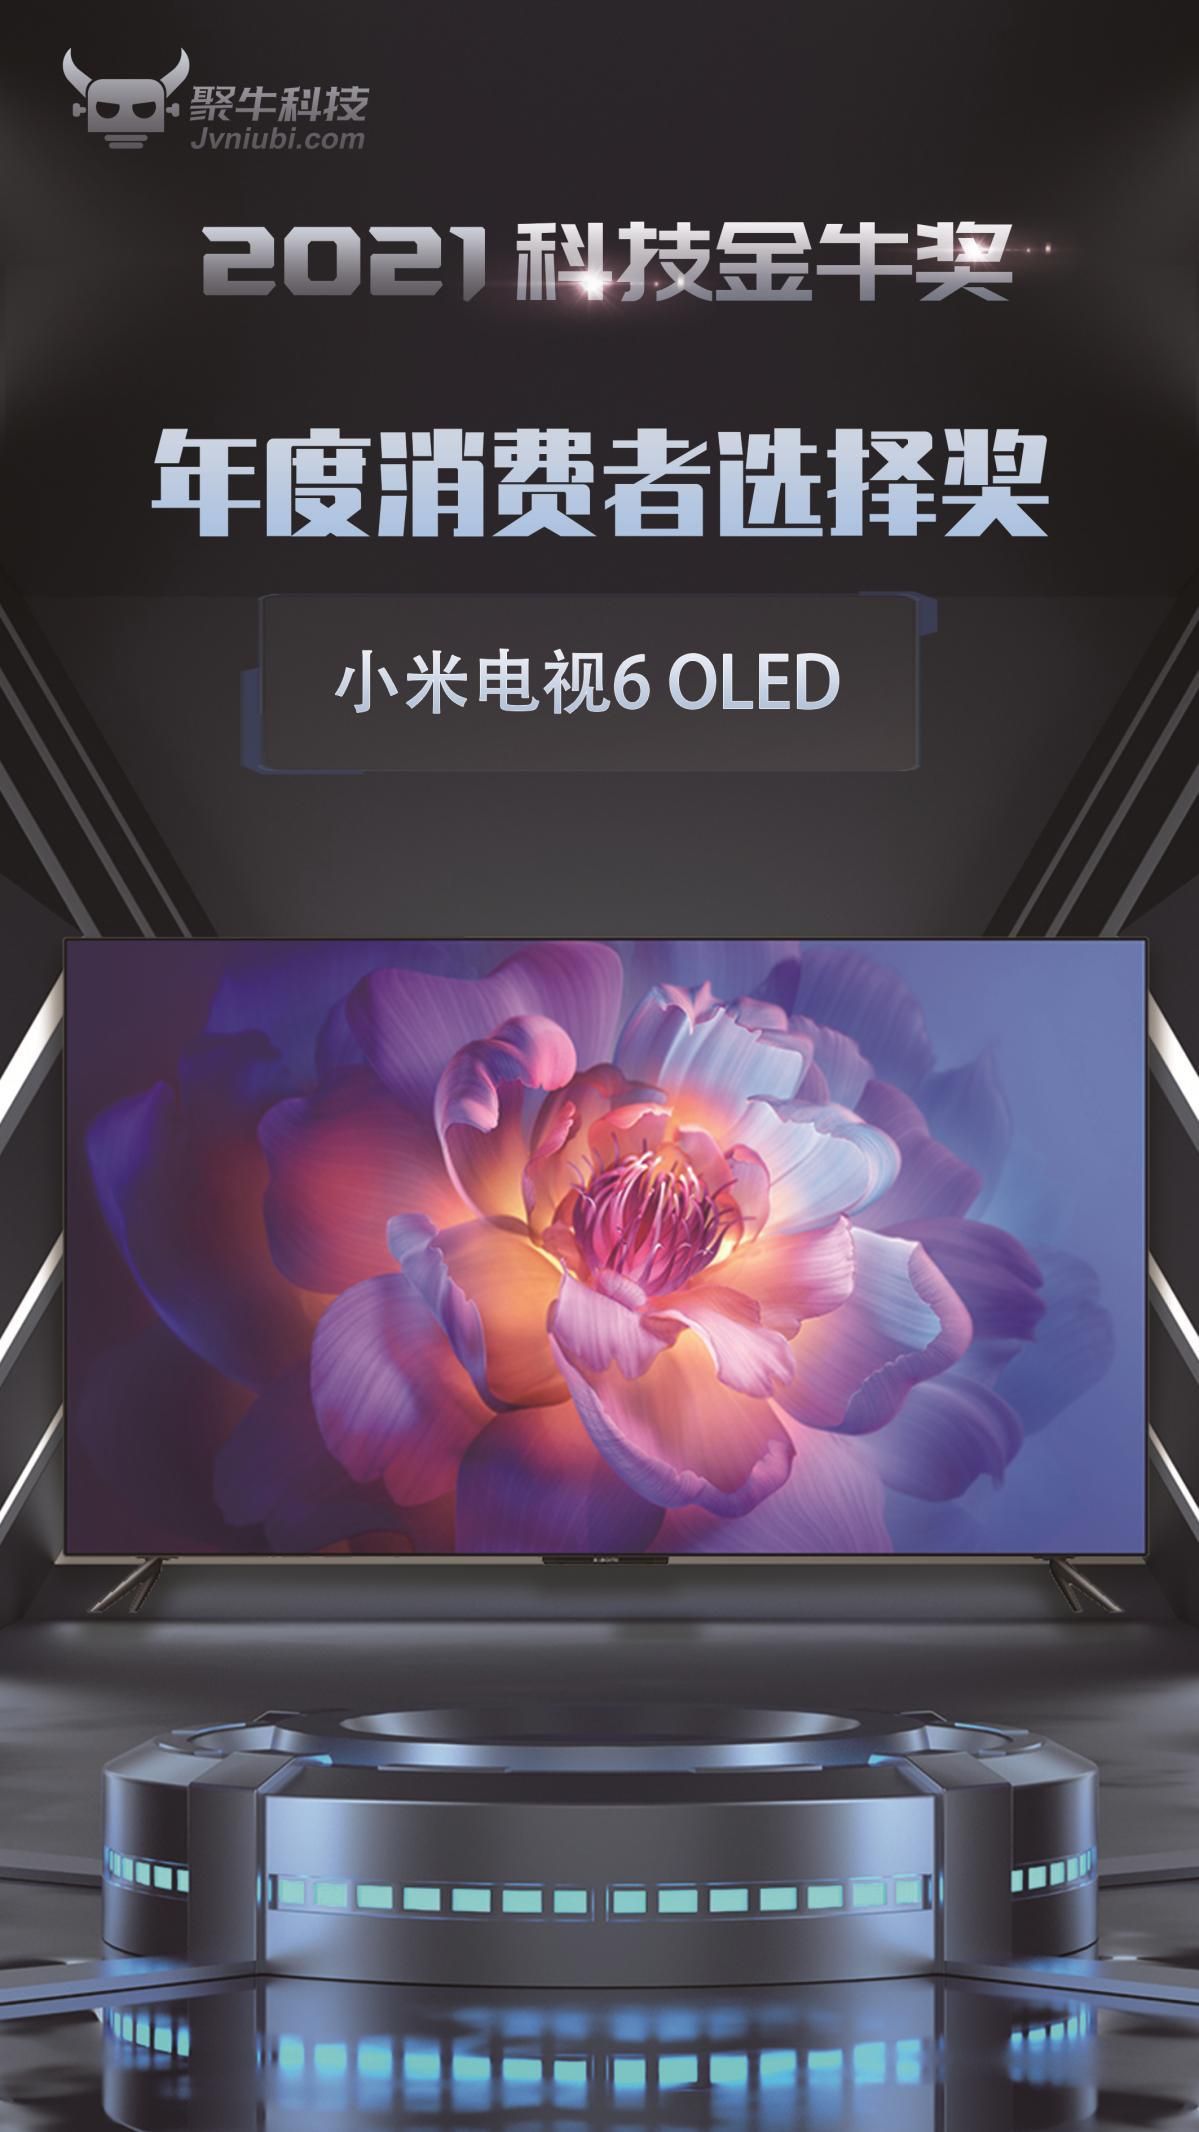 小米电视6 OLED斩获2021科技金牛奖年度消费者选择奖